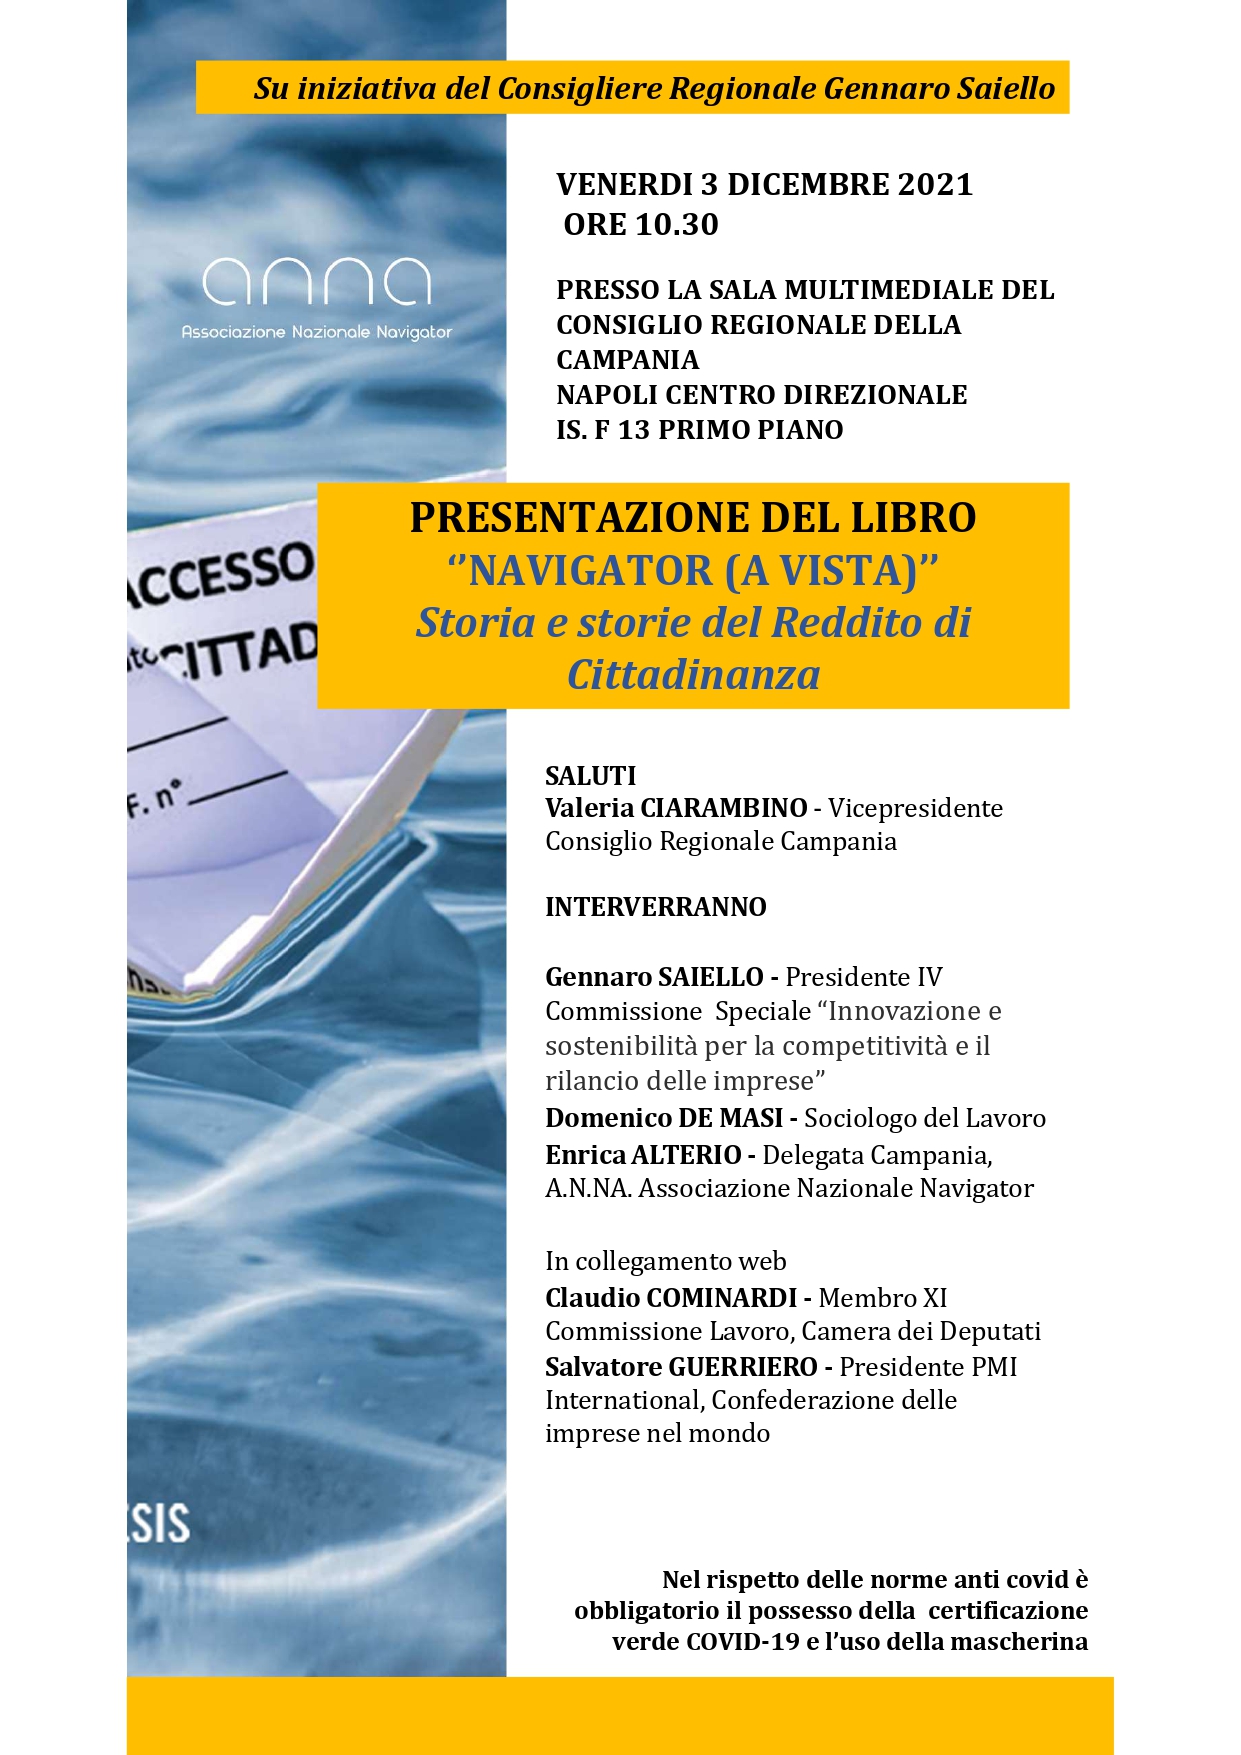 Regione Campania: presentazione libro “Navigator (a vista) Storia e storie del Reddito di Cittadinanza”, conferenza stampa